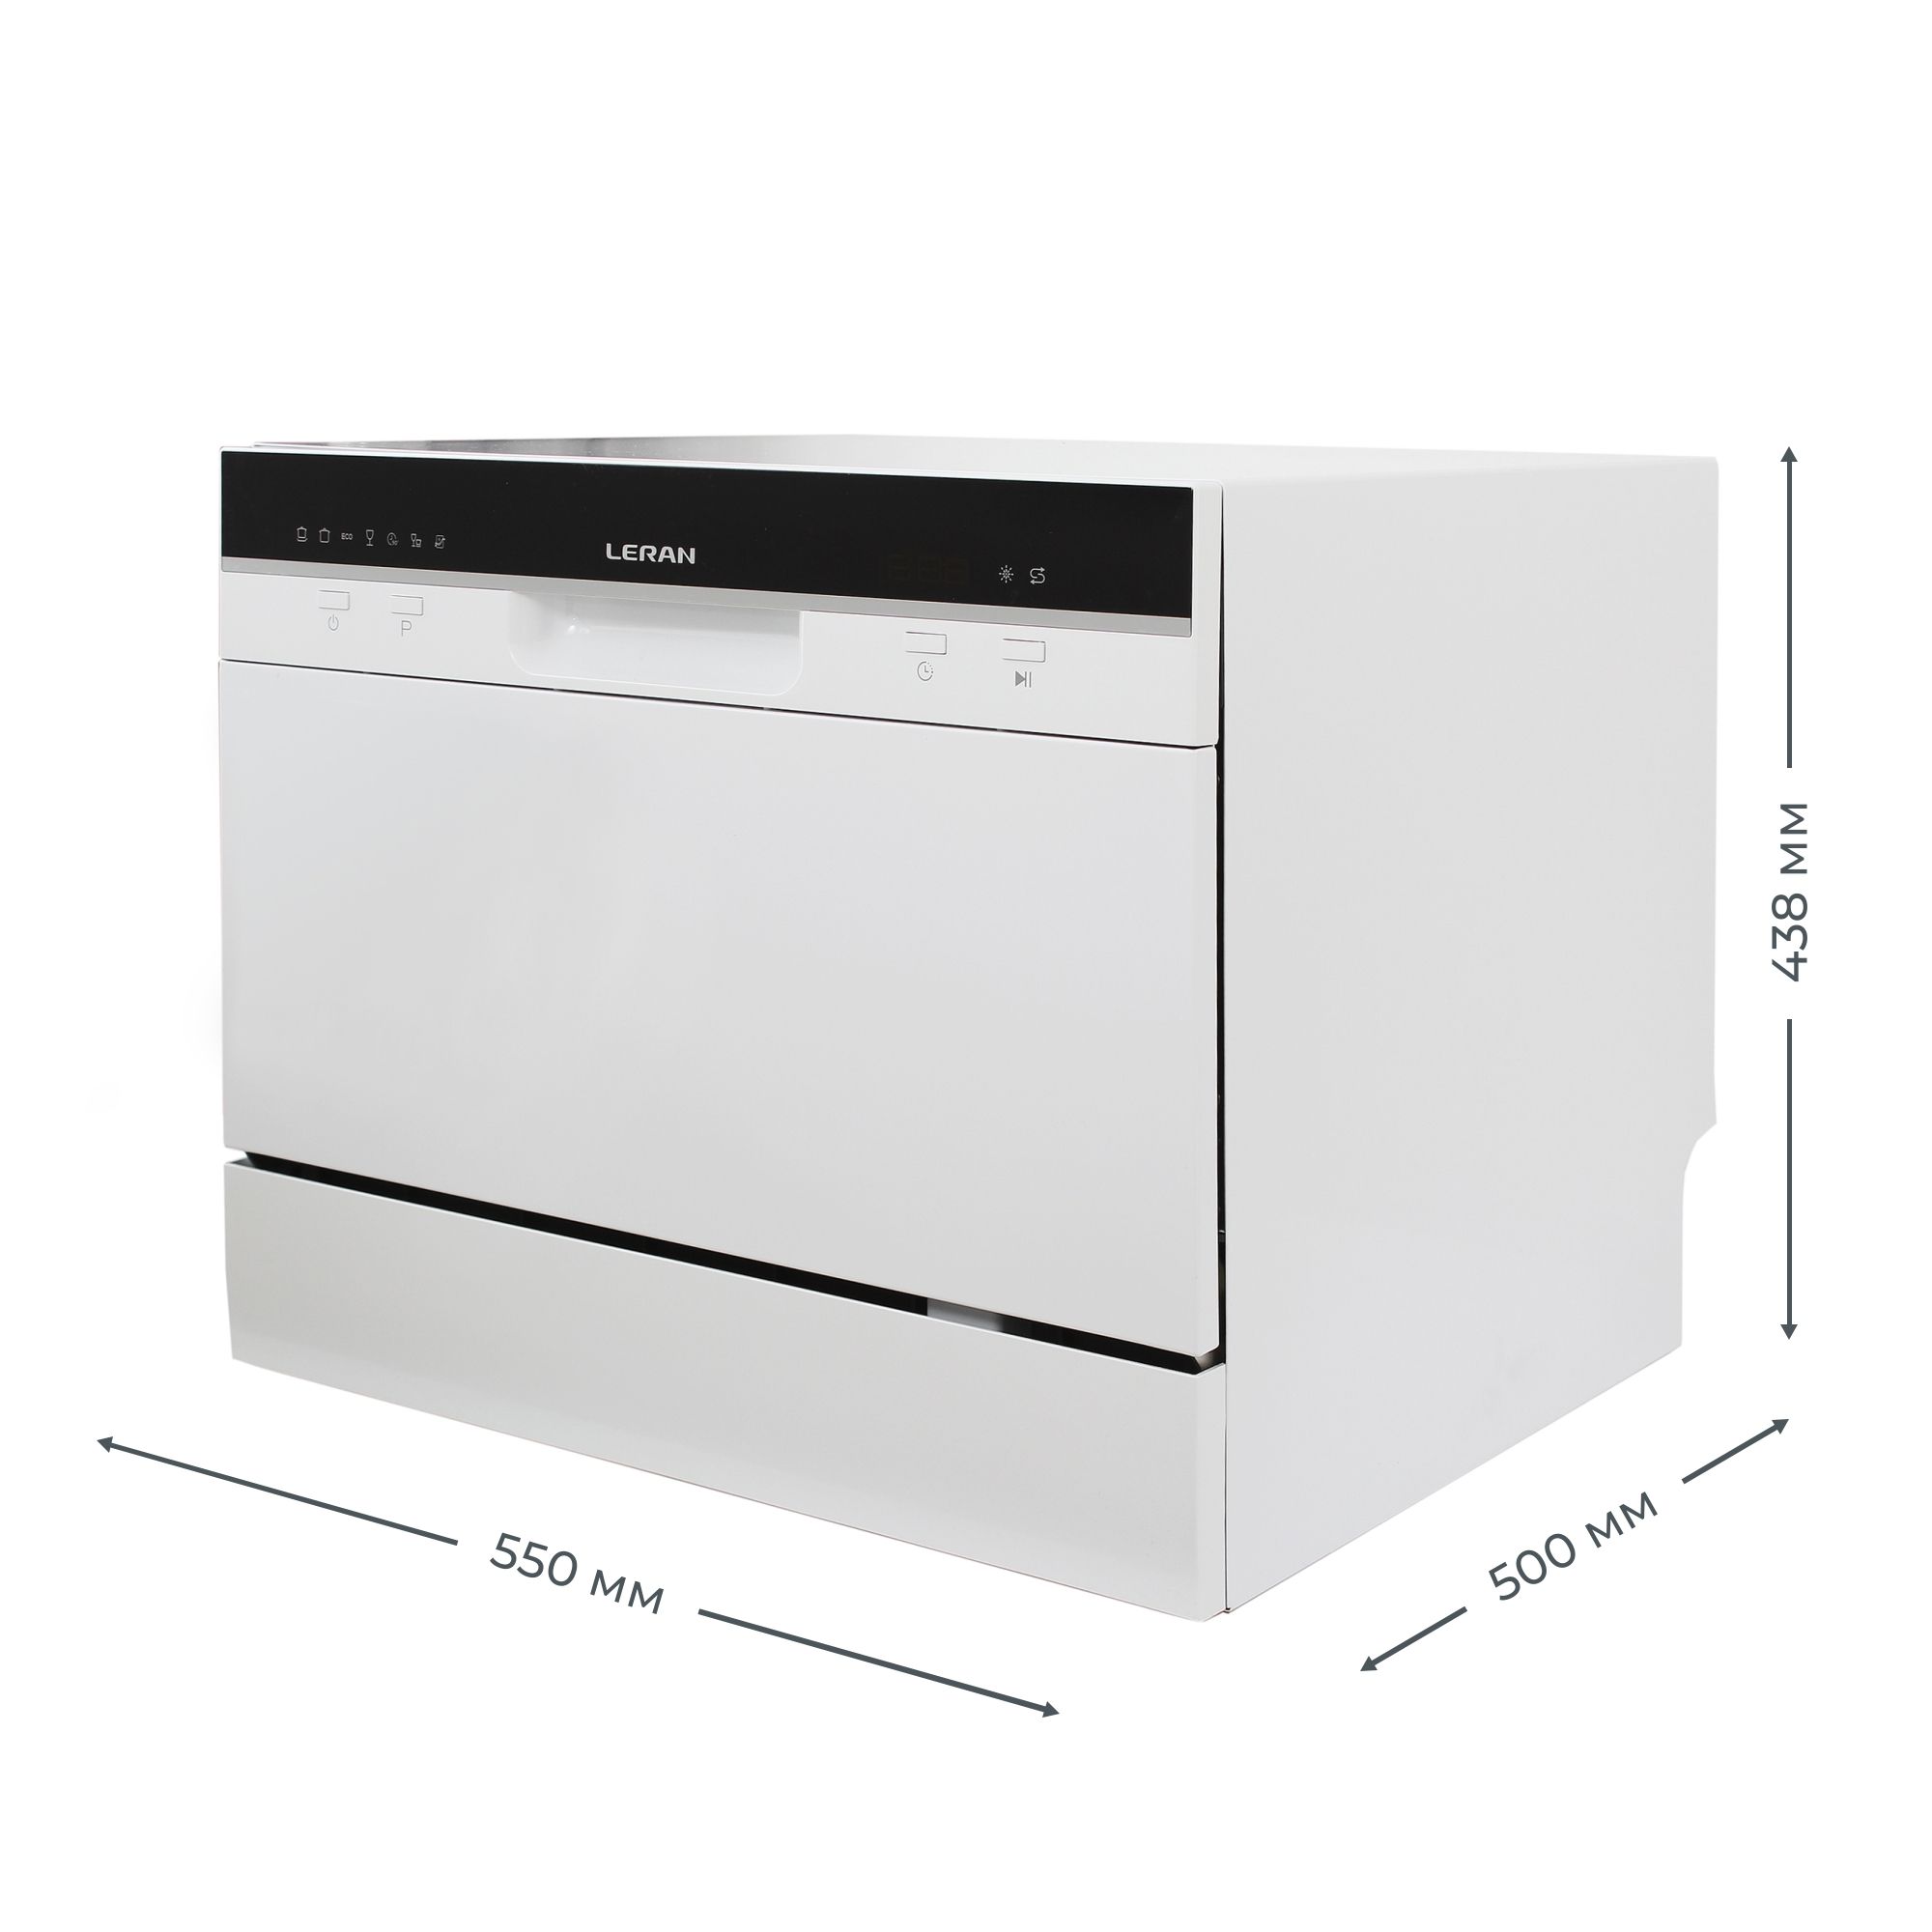 Посудомоечная машина leran cdw. Leran CDW 55-067. Посудомоечная машина Leran. ПММ Leran 60146. Посудомоечная машина Leran CDW 55-067 Silver, компактная, серебристый.